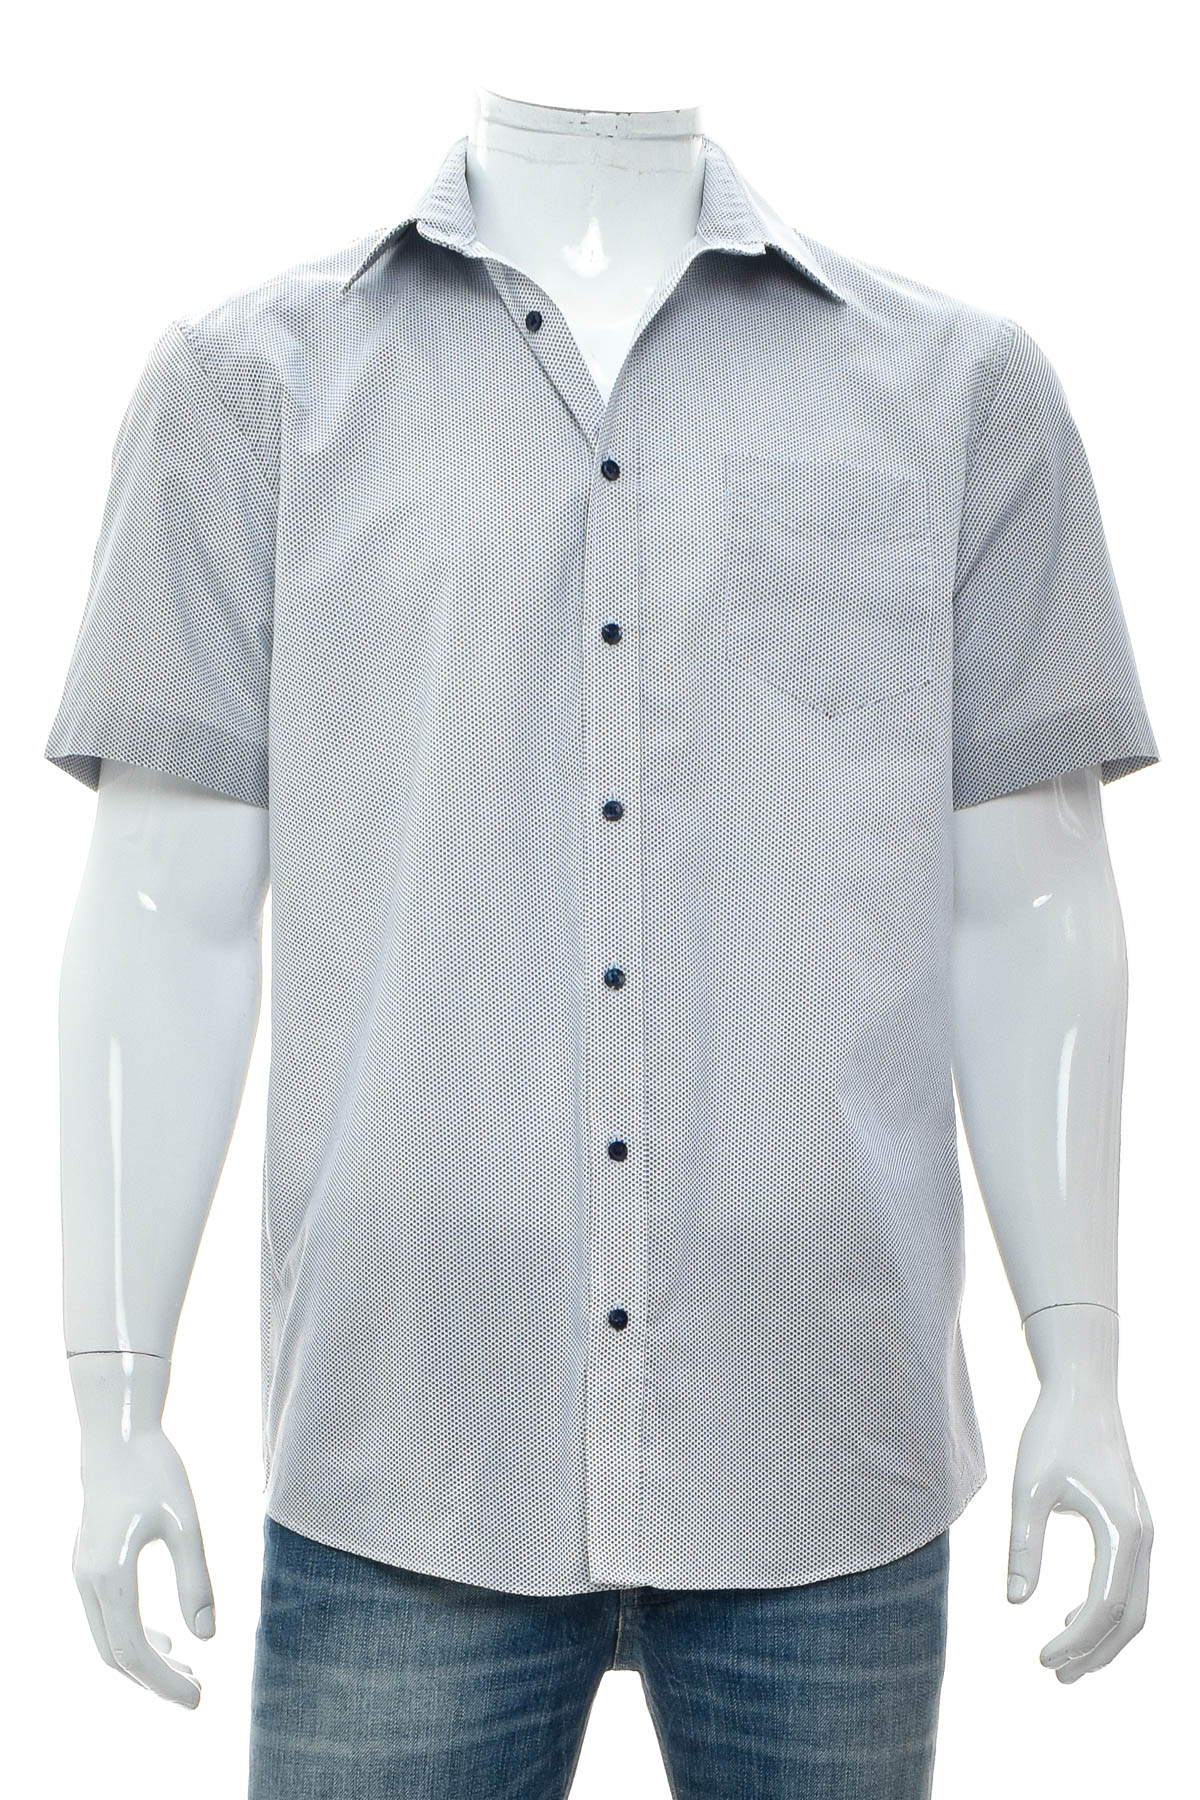 Ανδρικό πουκάμισο - C&A - 0